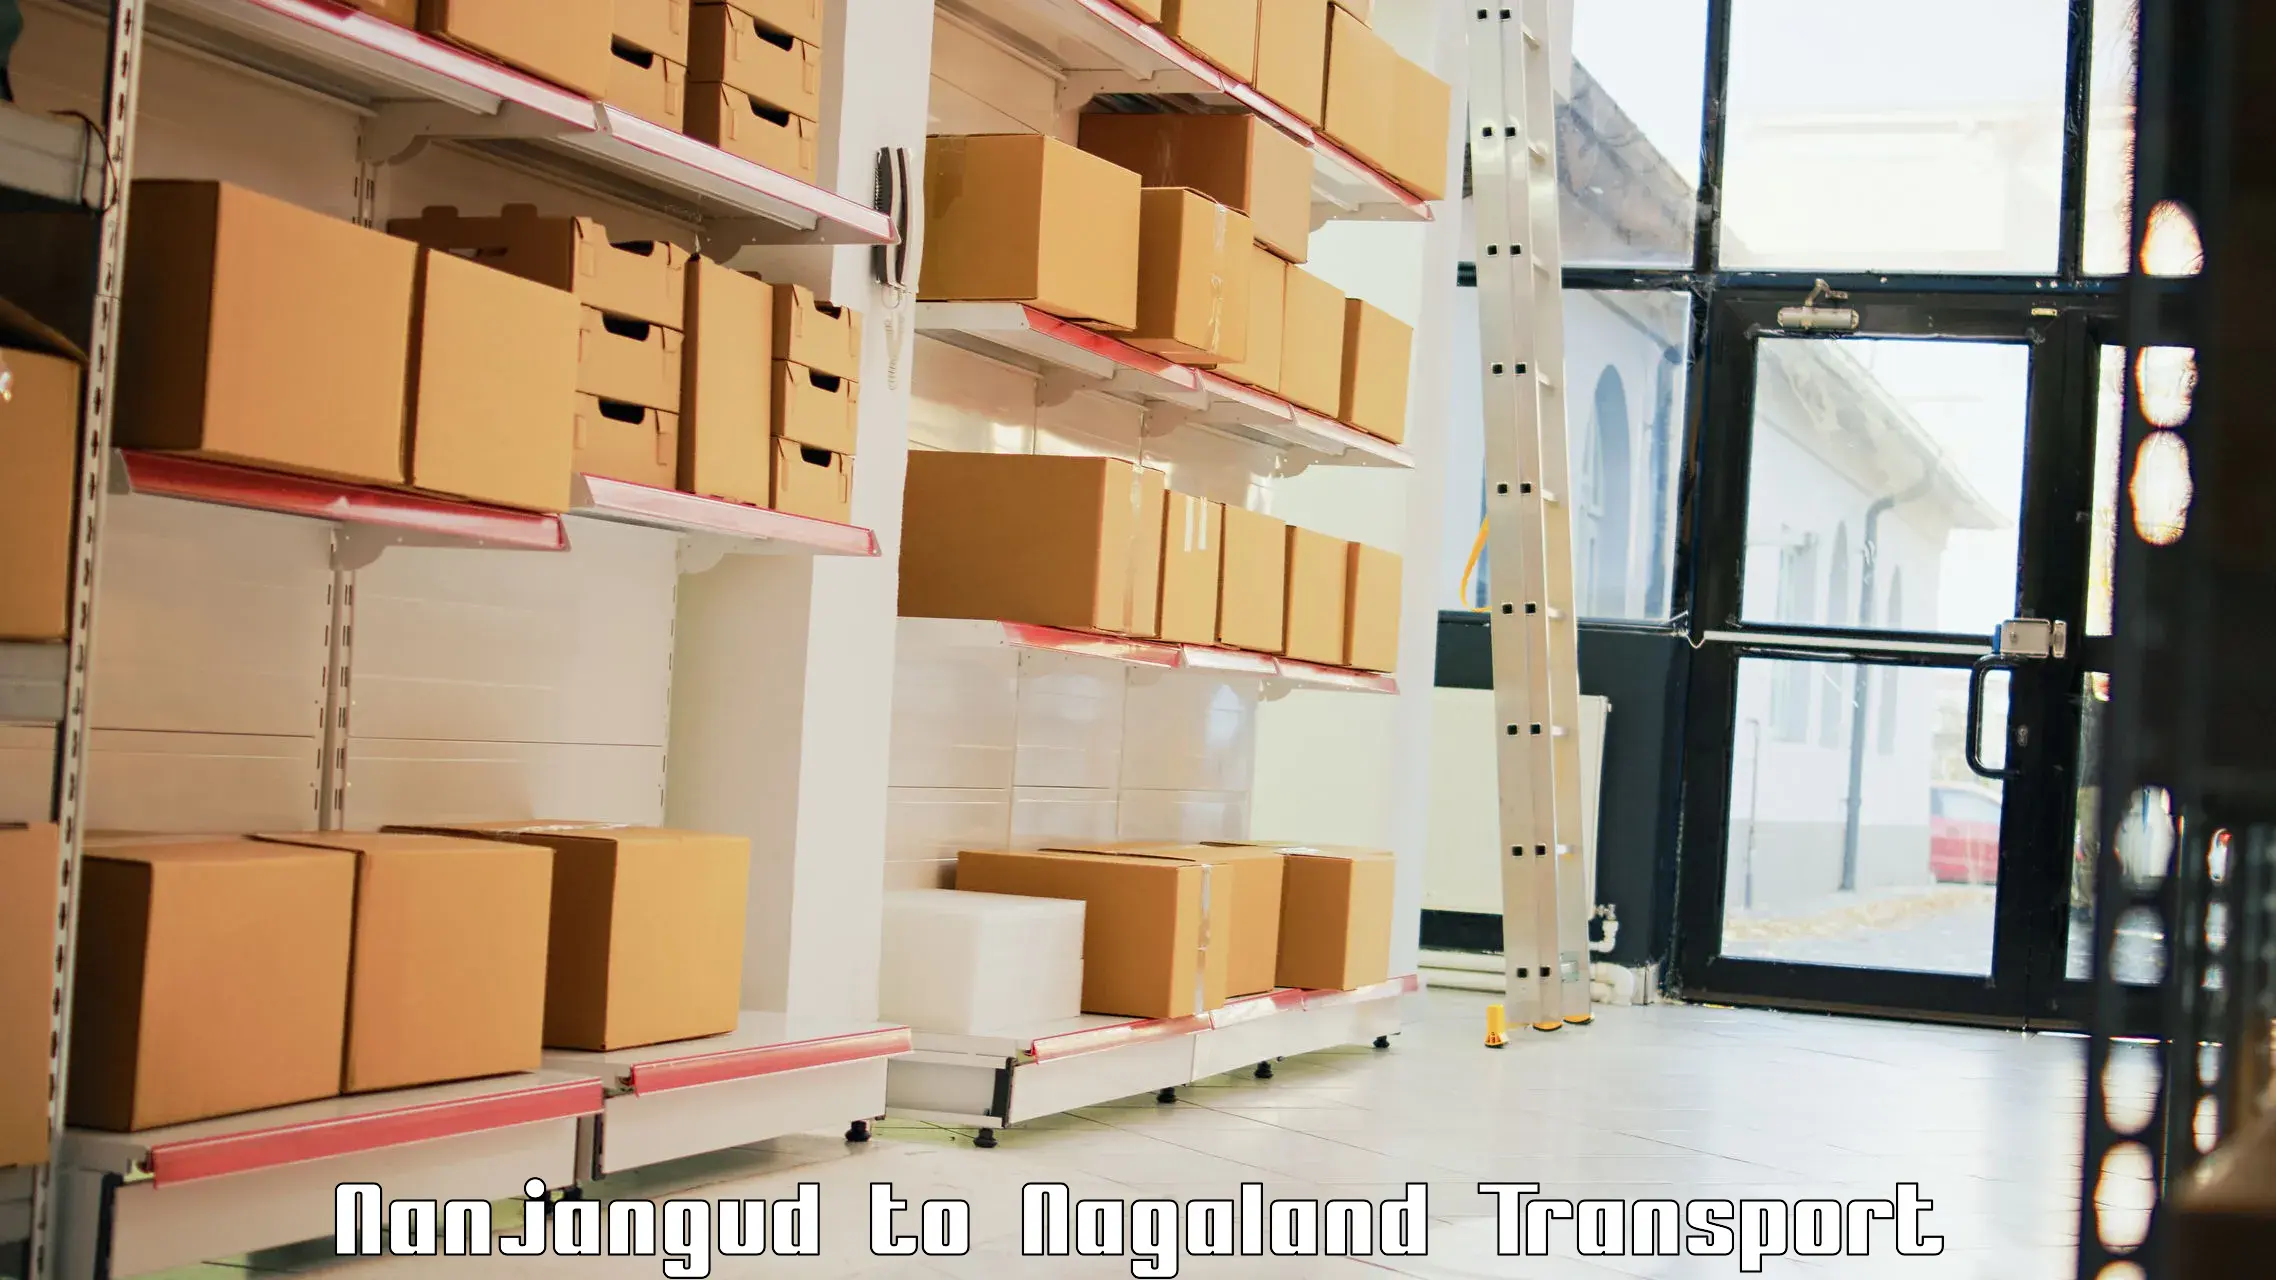 Lorry transport service Nanjangud to Longleng